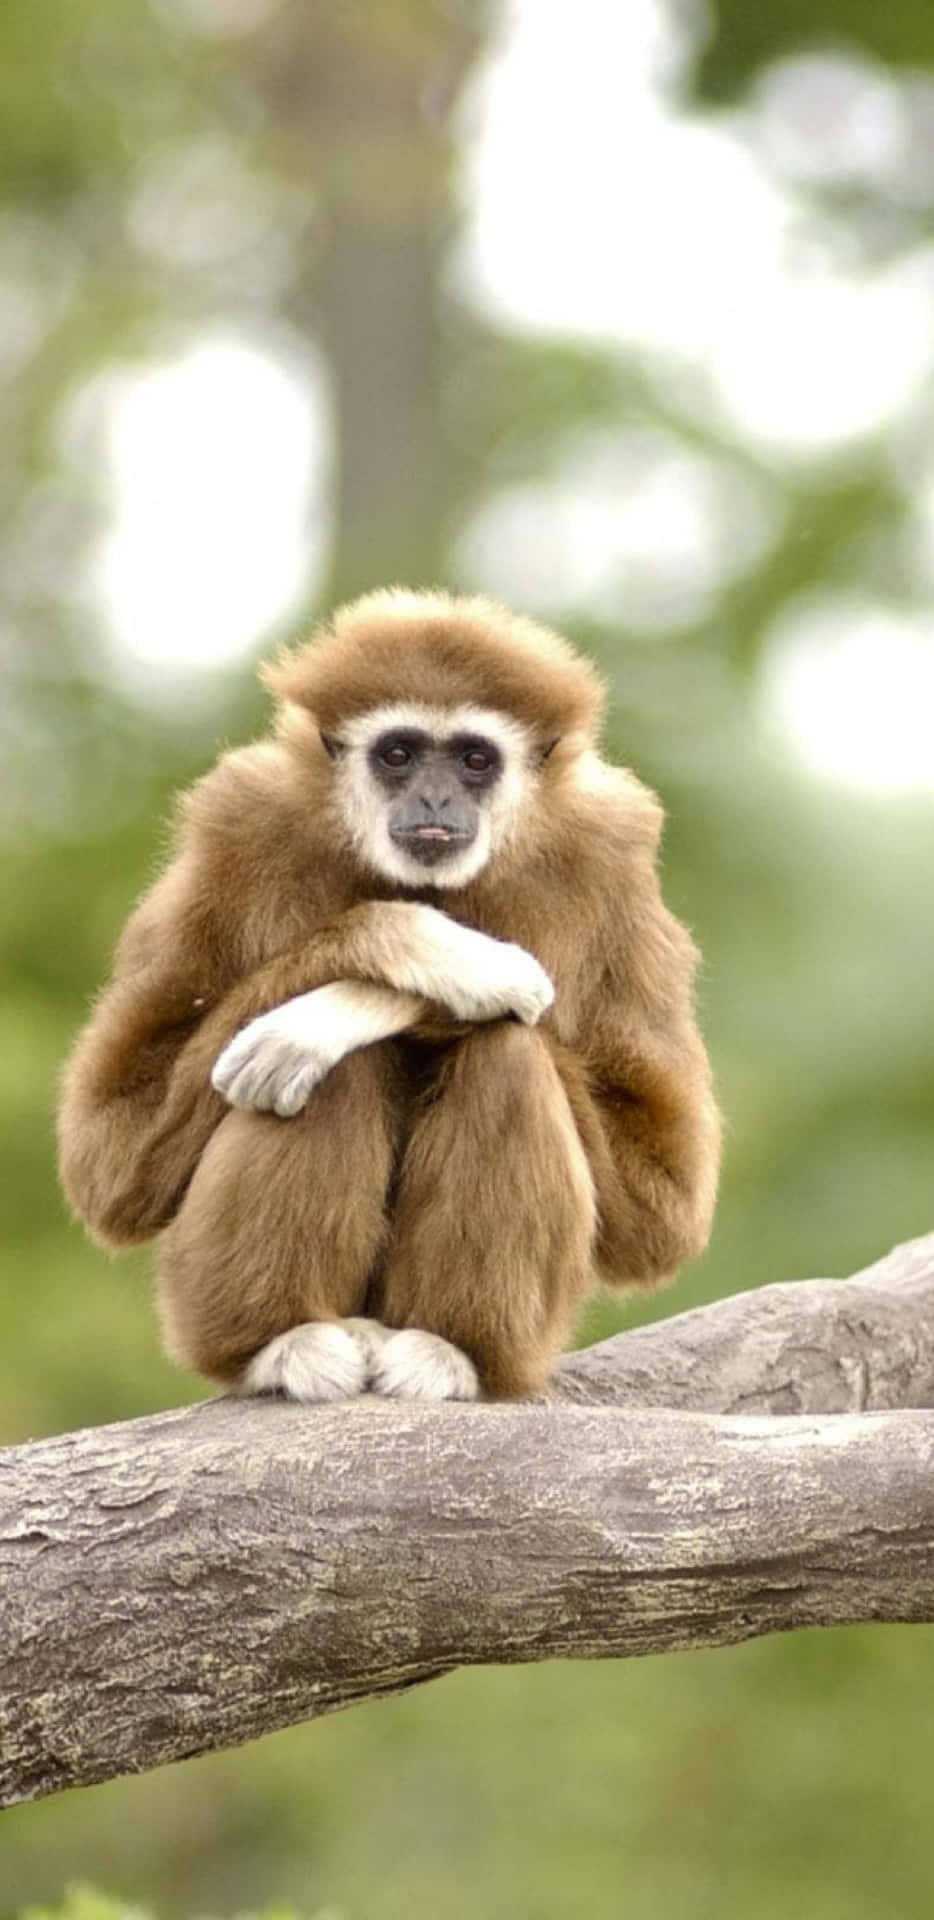 En abe sidder på en grene med sine hænder på sit ansigt.